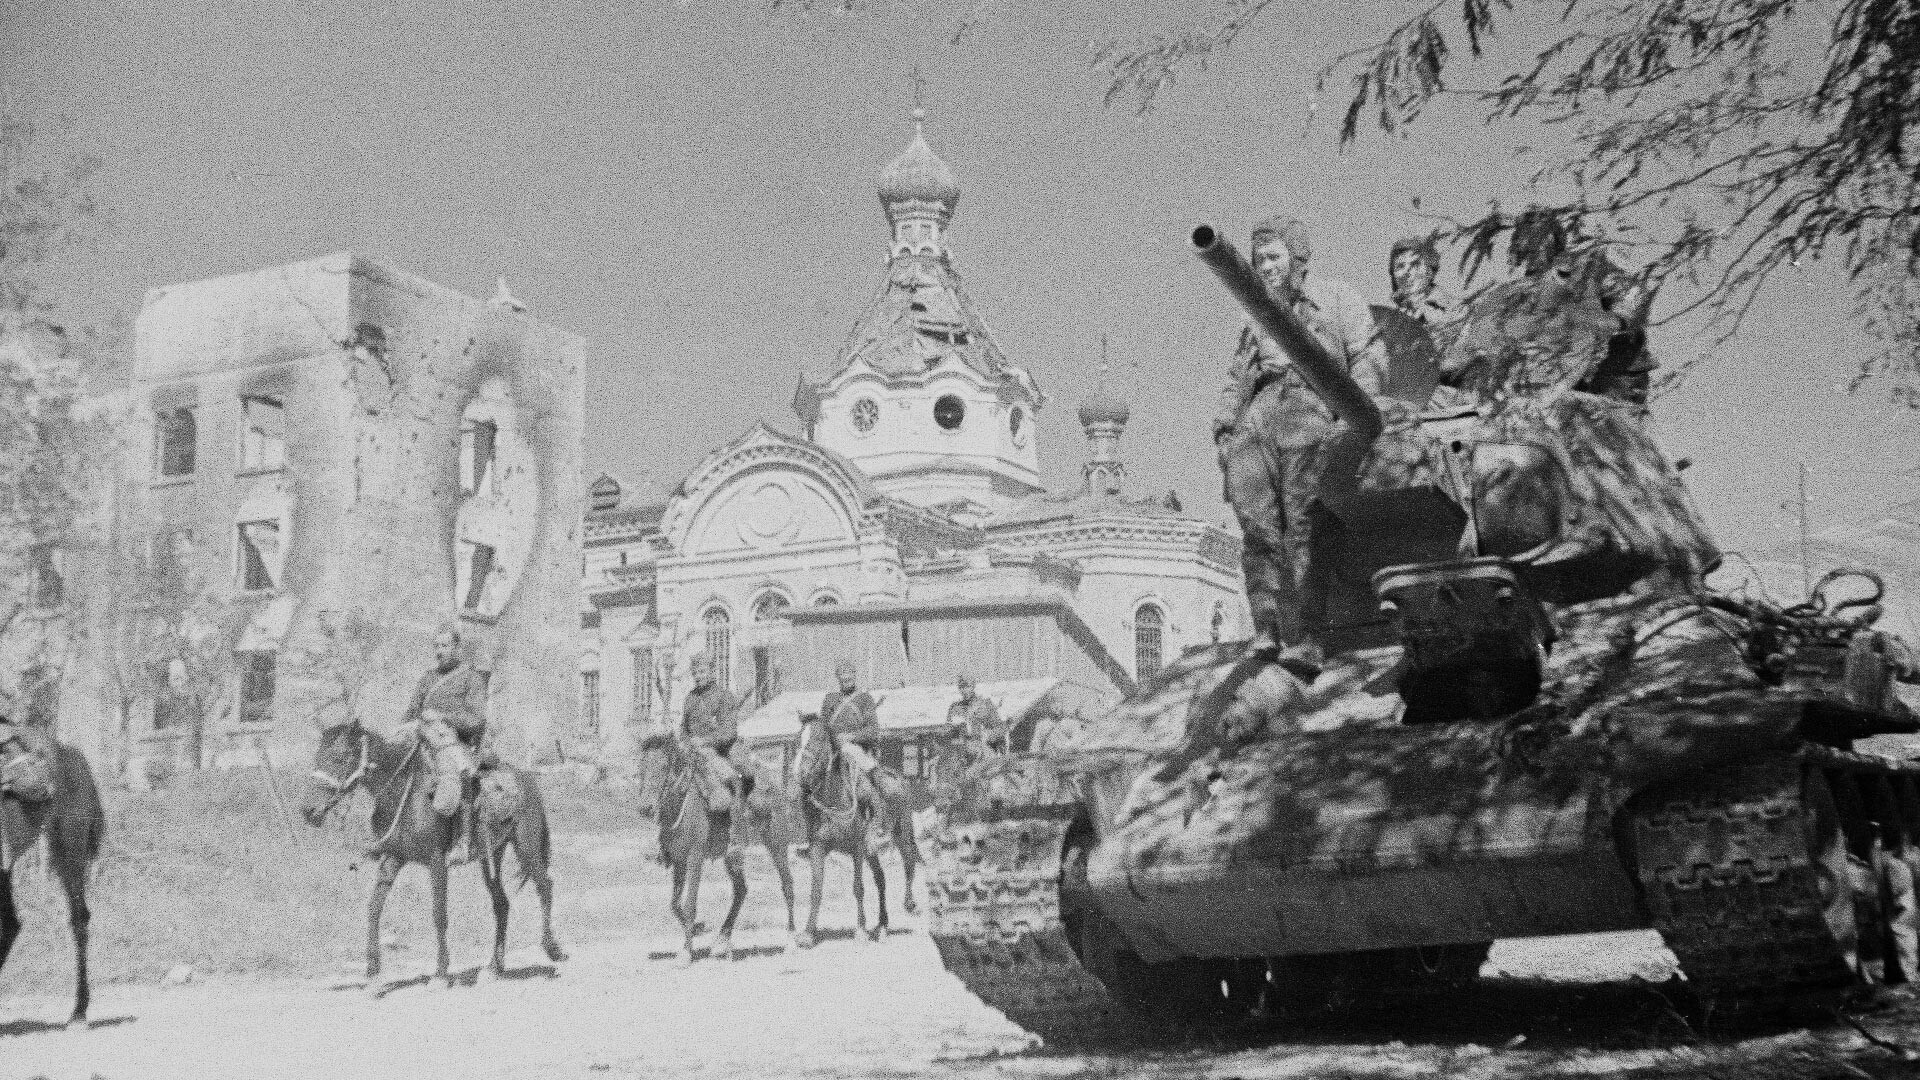 Soviet troops entering Novorossiysk.